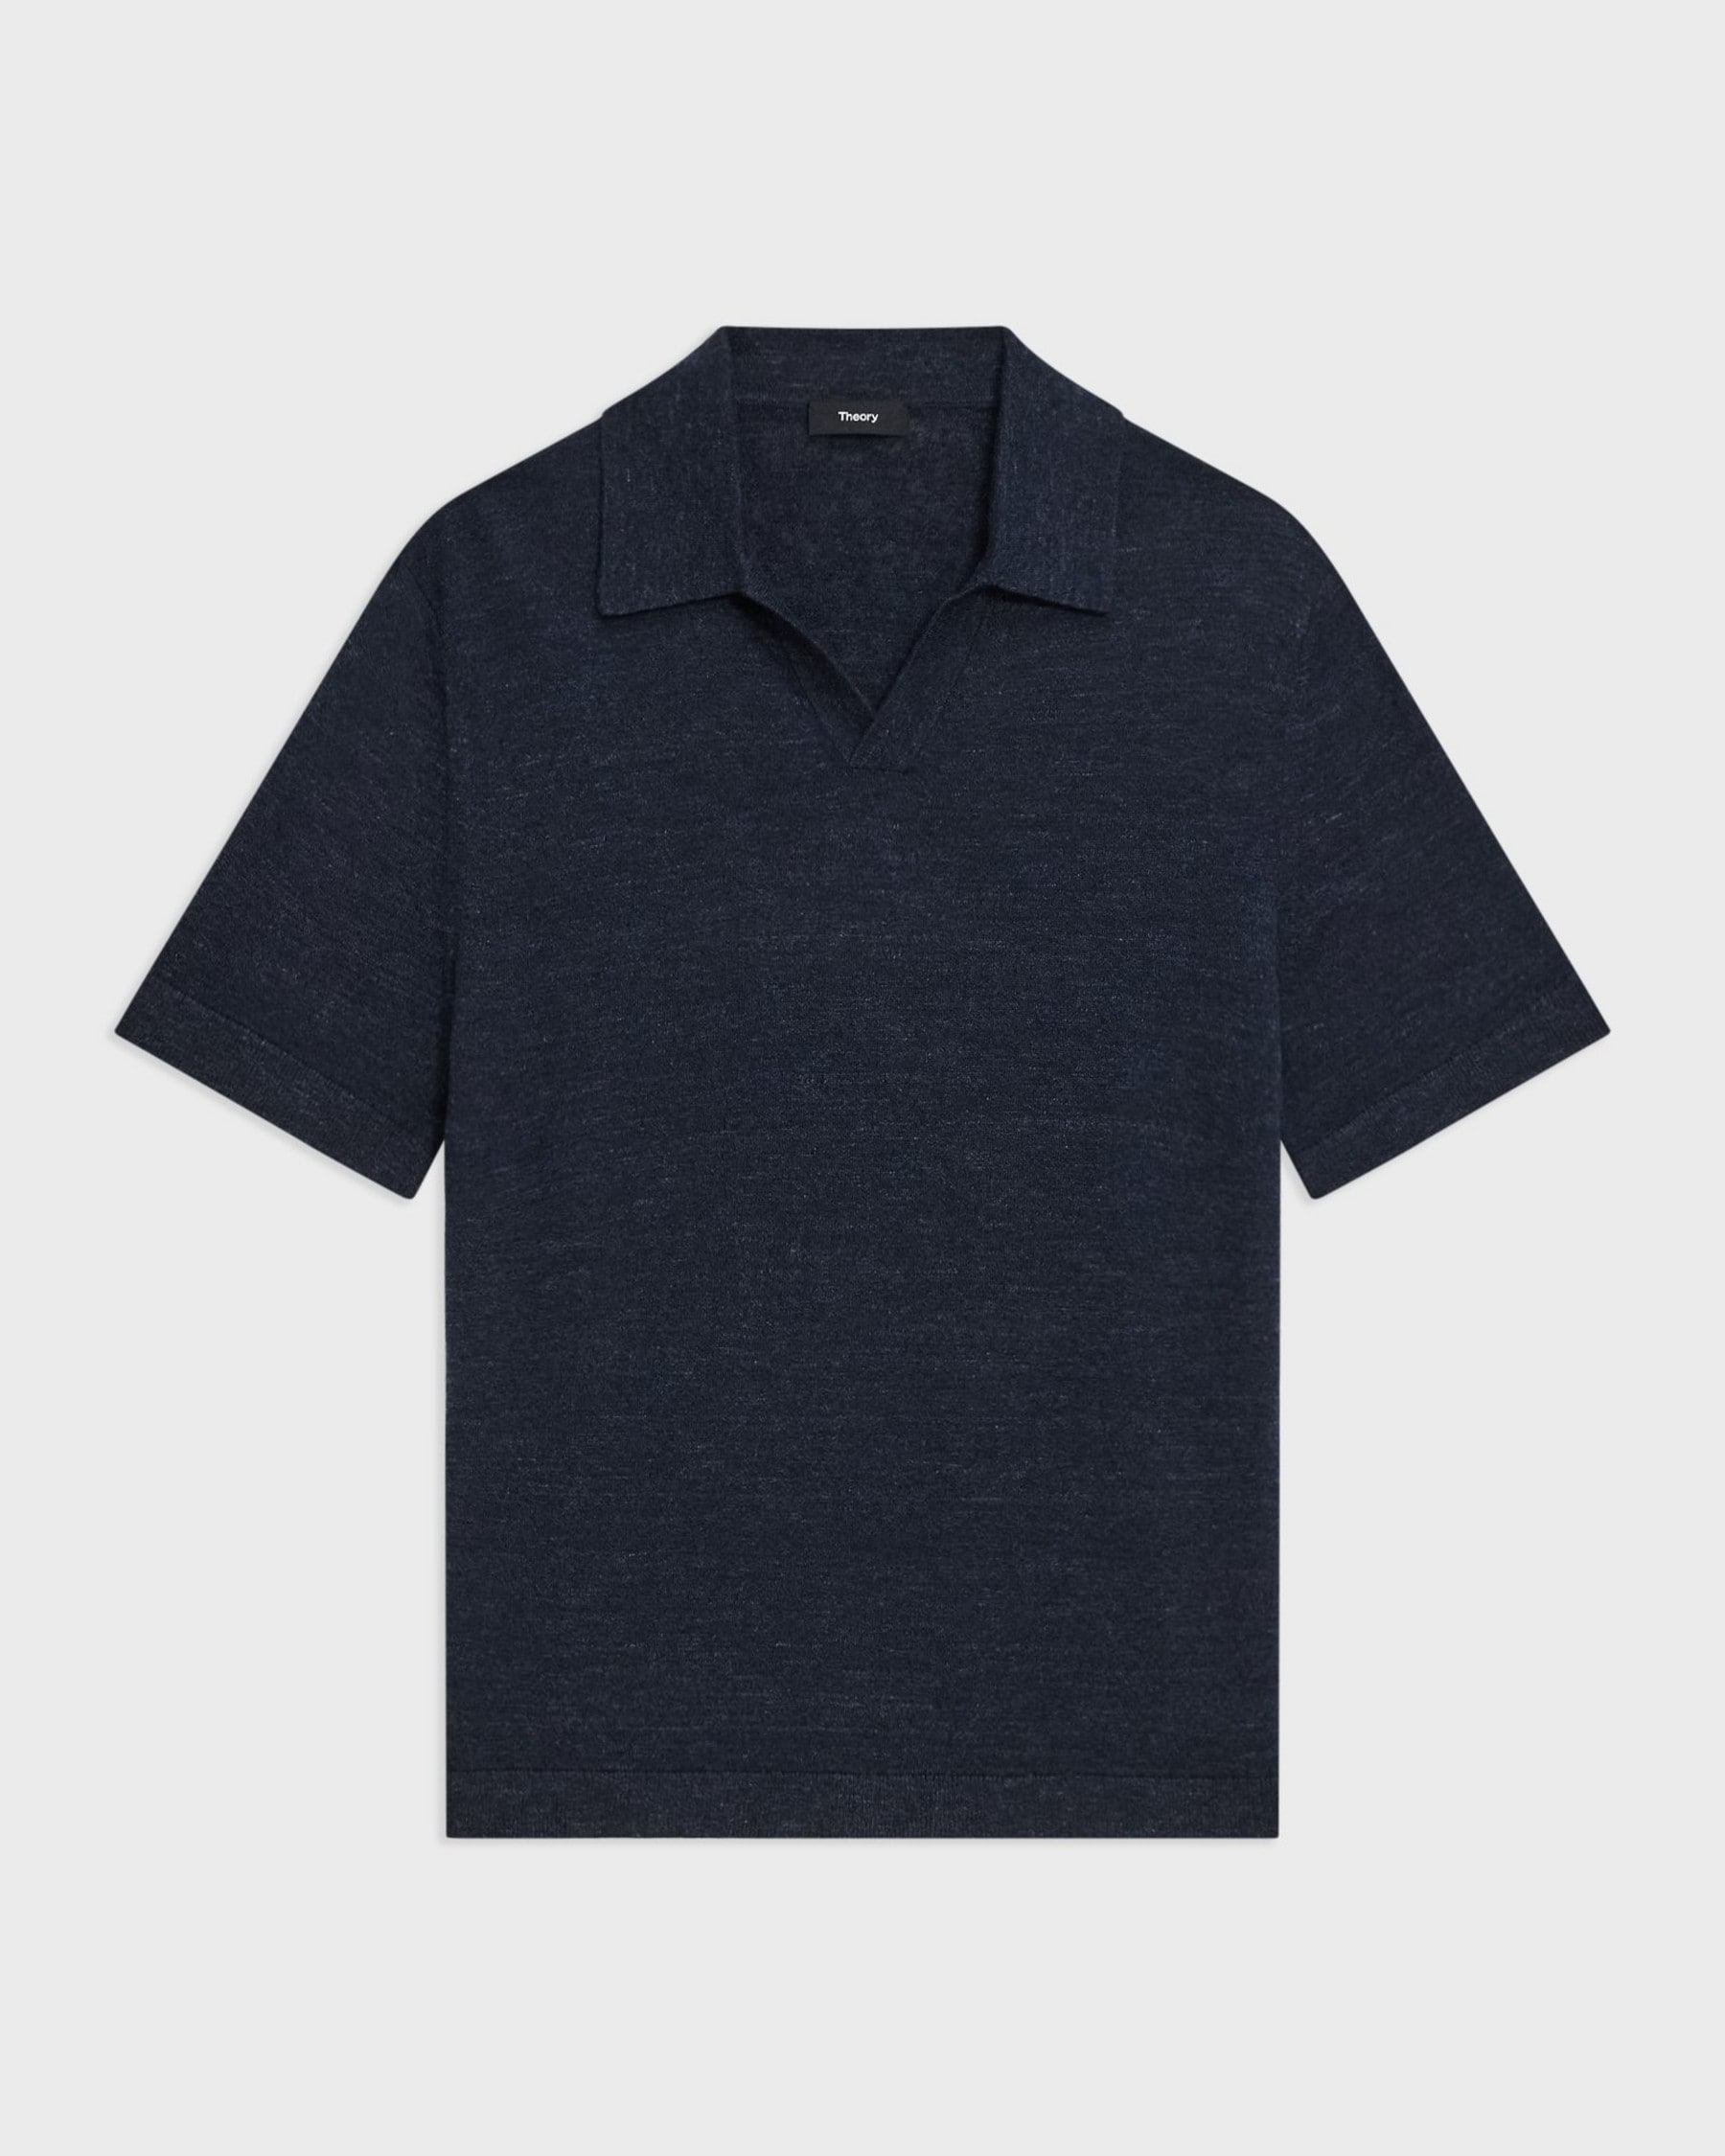 Brenan Polo Shirt in Cotton-Linen